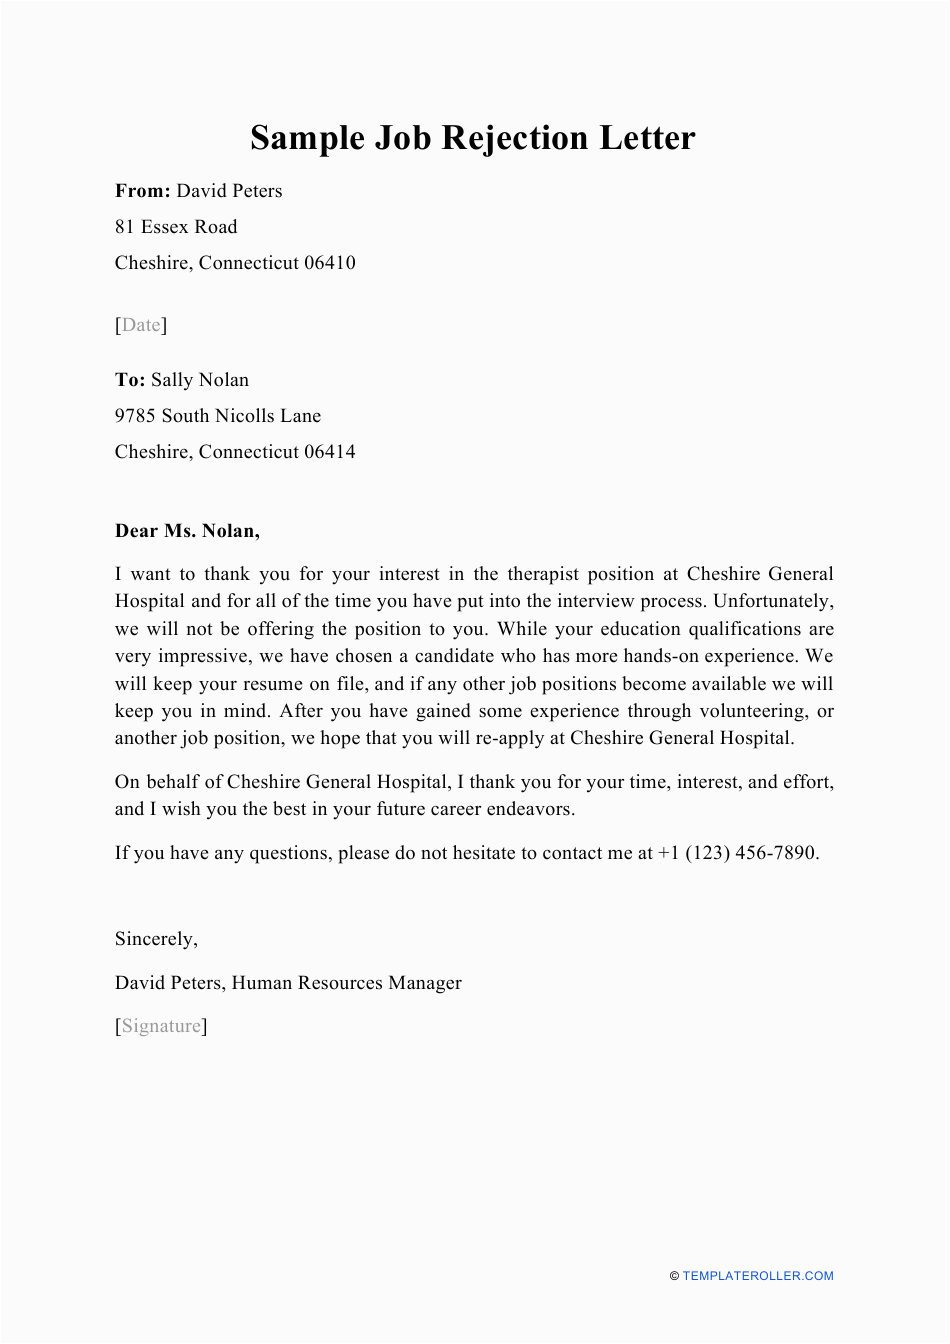 sample job rejection letter